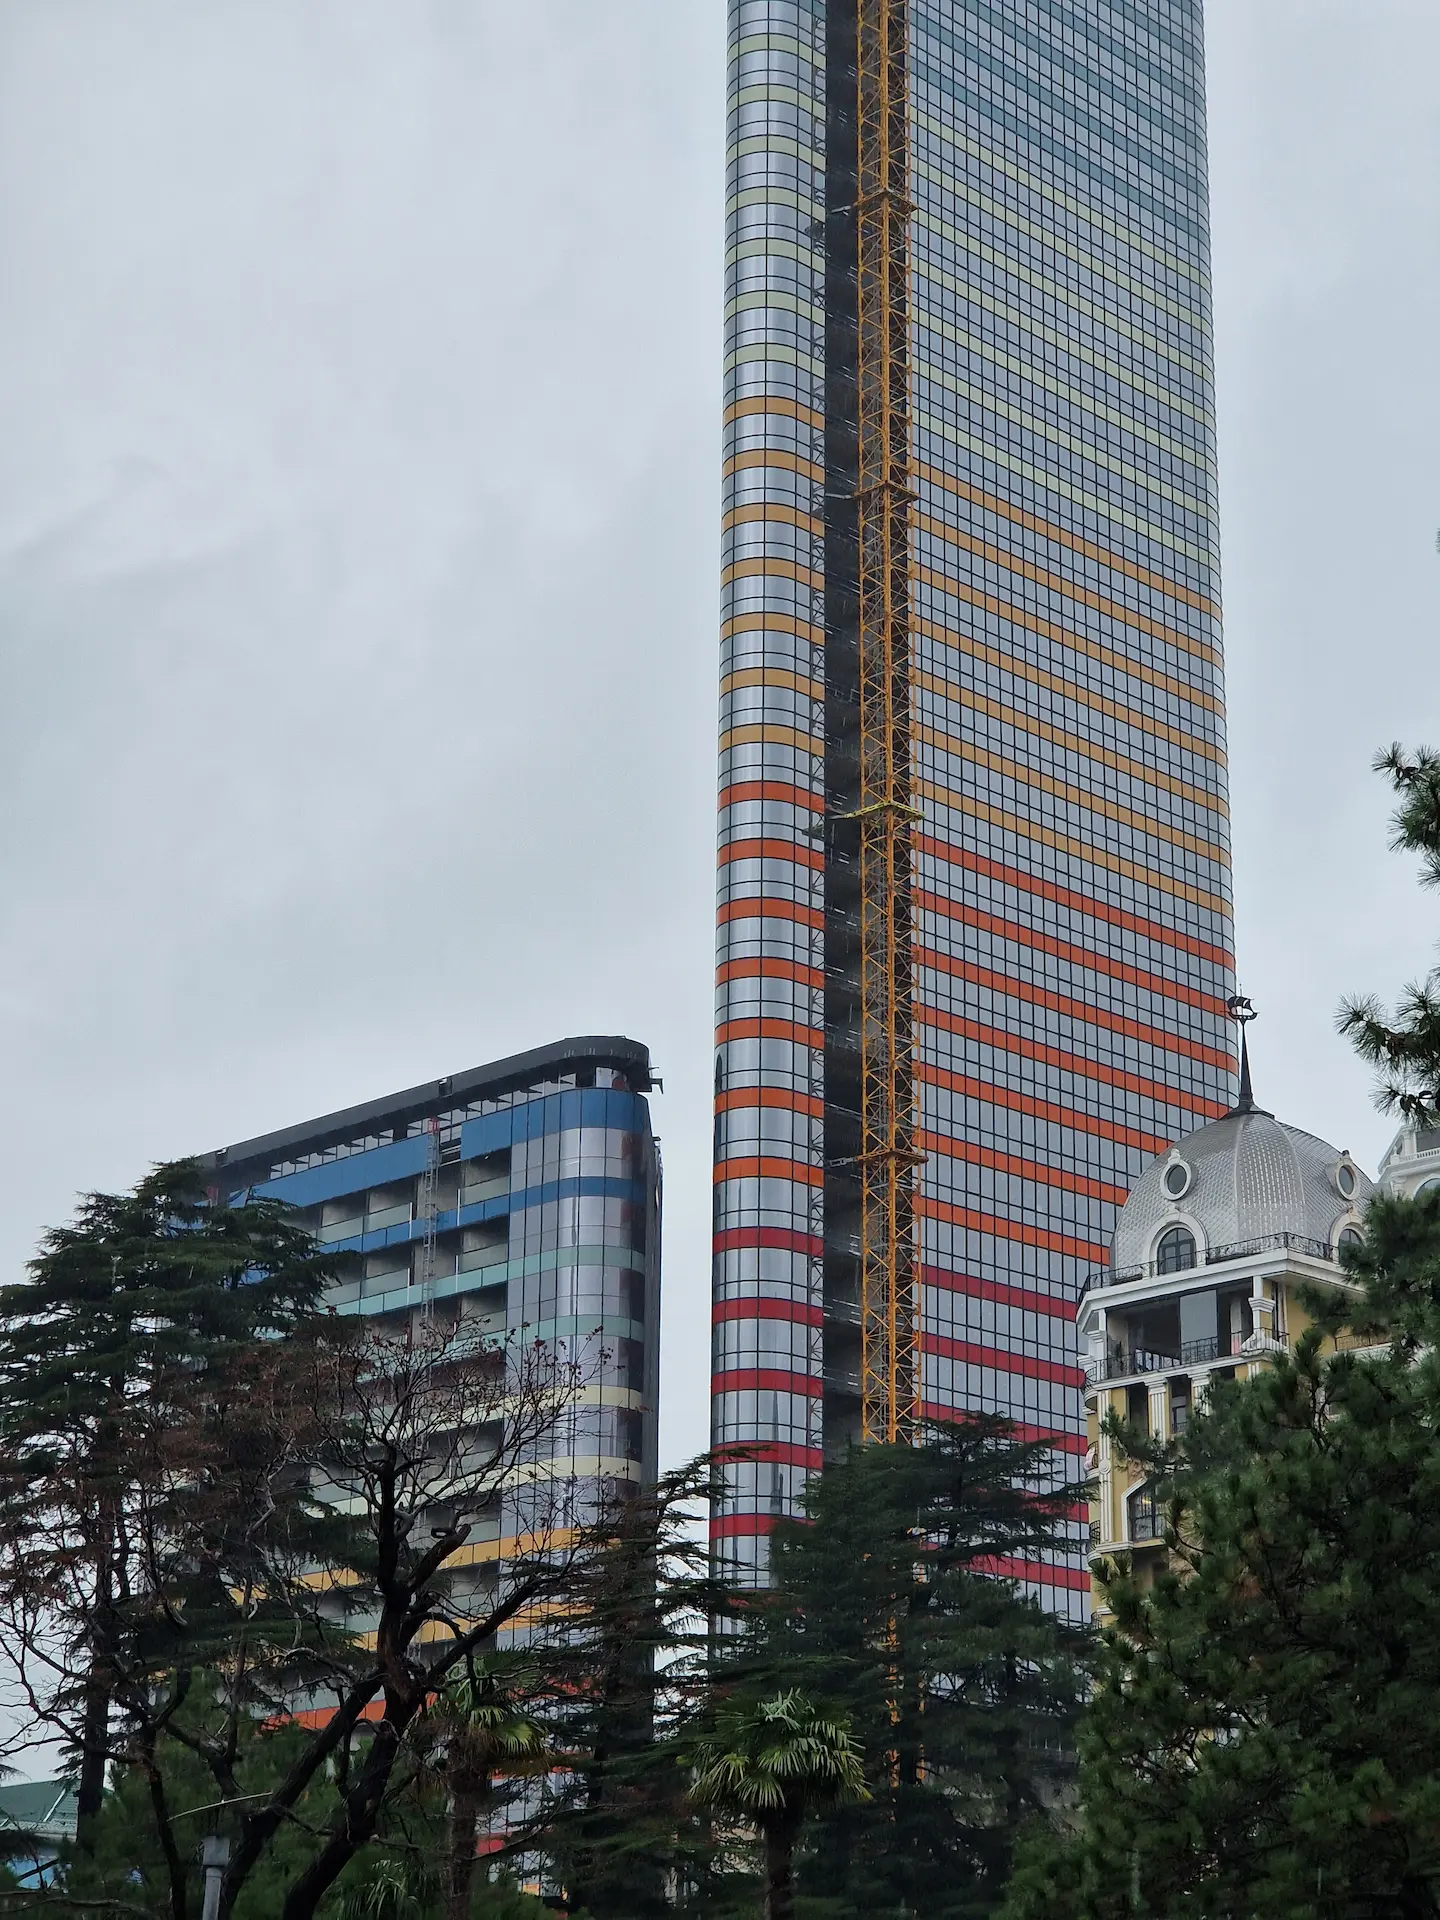 La nouvelle tour Azure de Batoumi, encore plus grande que le Marriott, une coupe triangulaire et un dégradé du rouge au bleu en s'éloignant du sol.